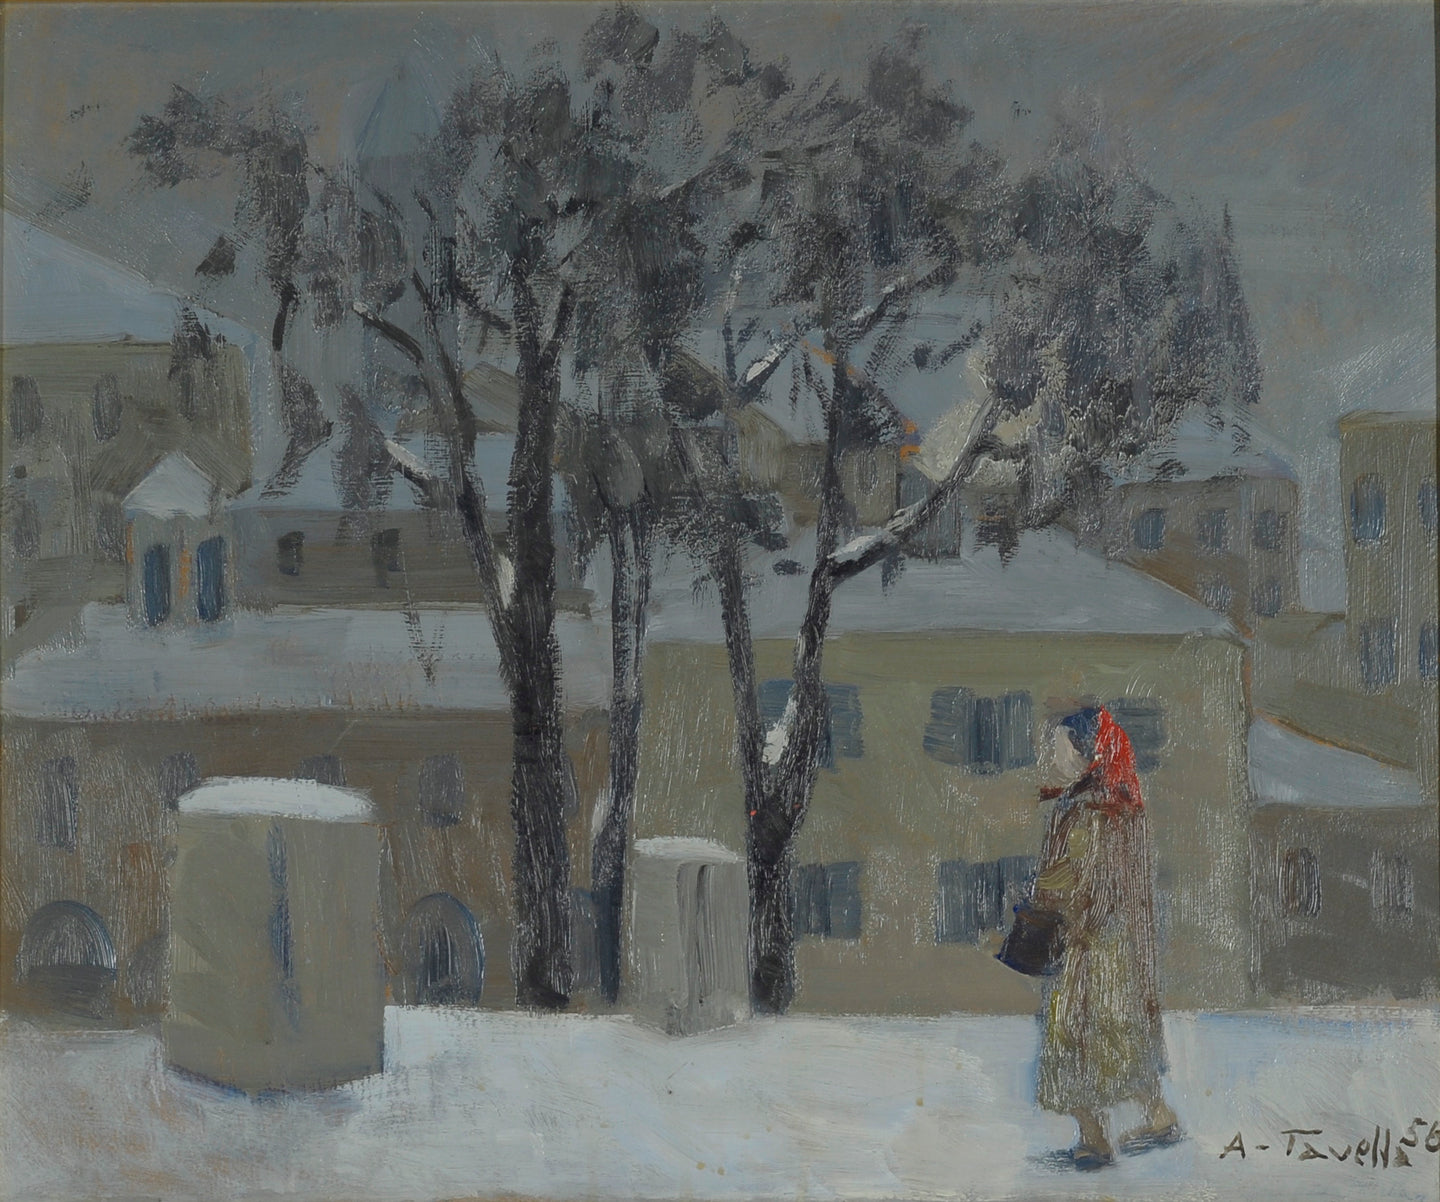 Aldo Tavella, Inverno, 1958